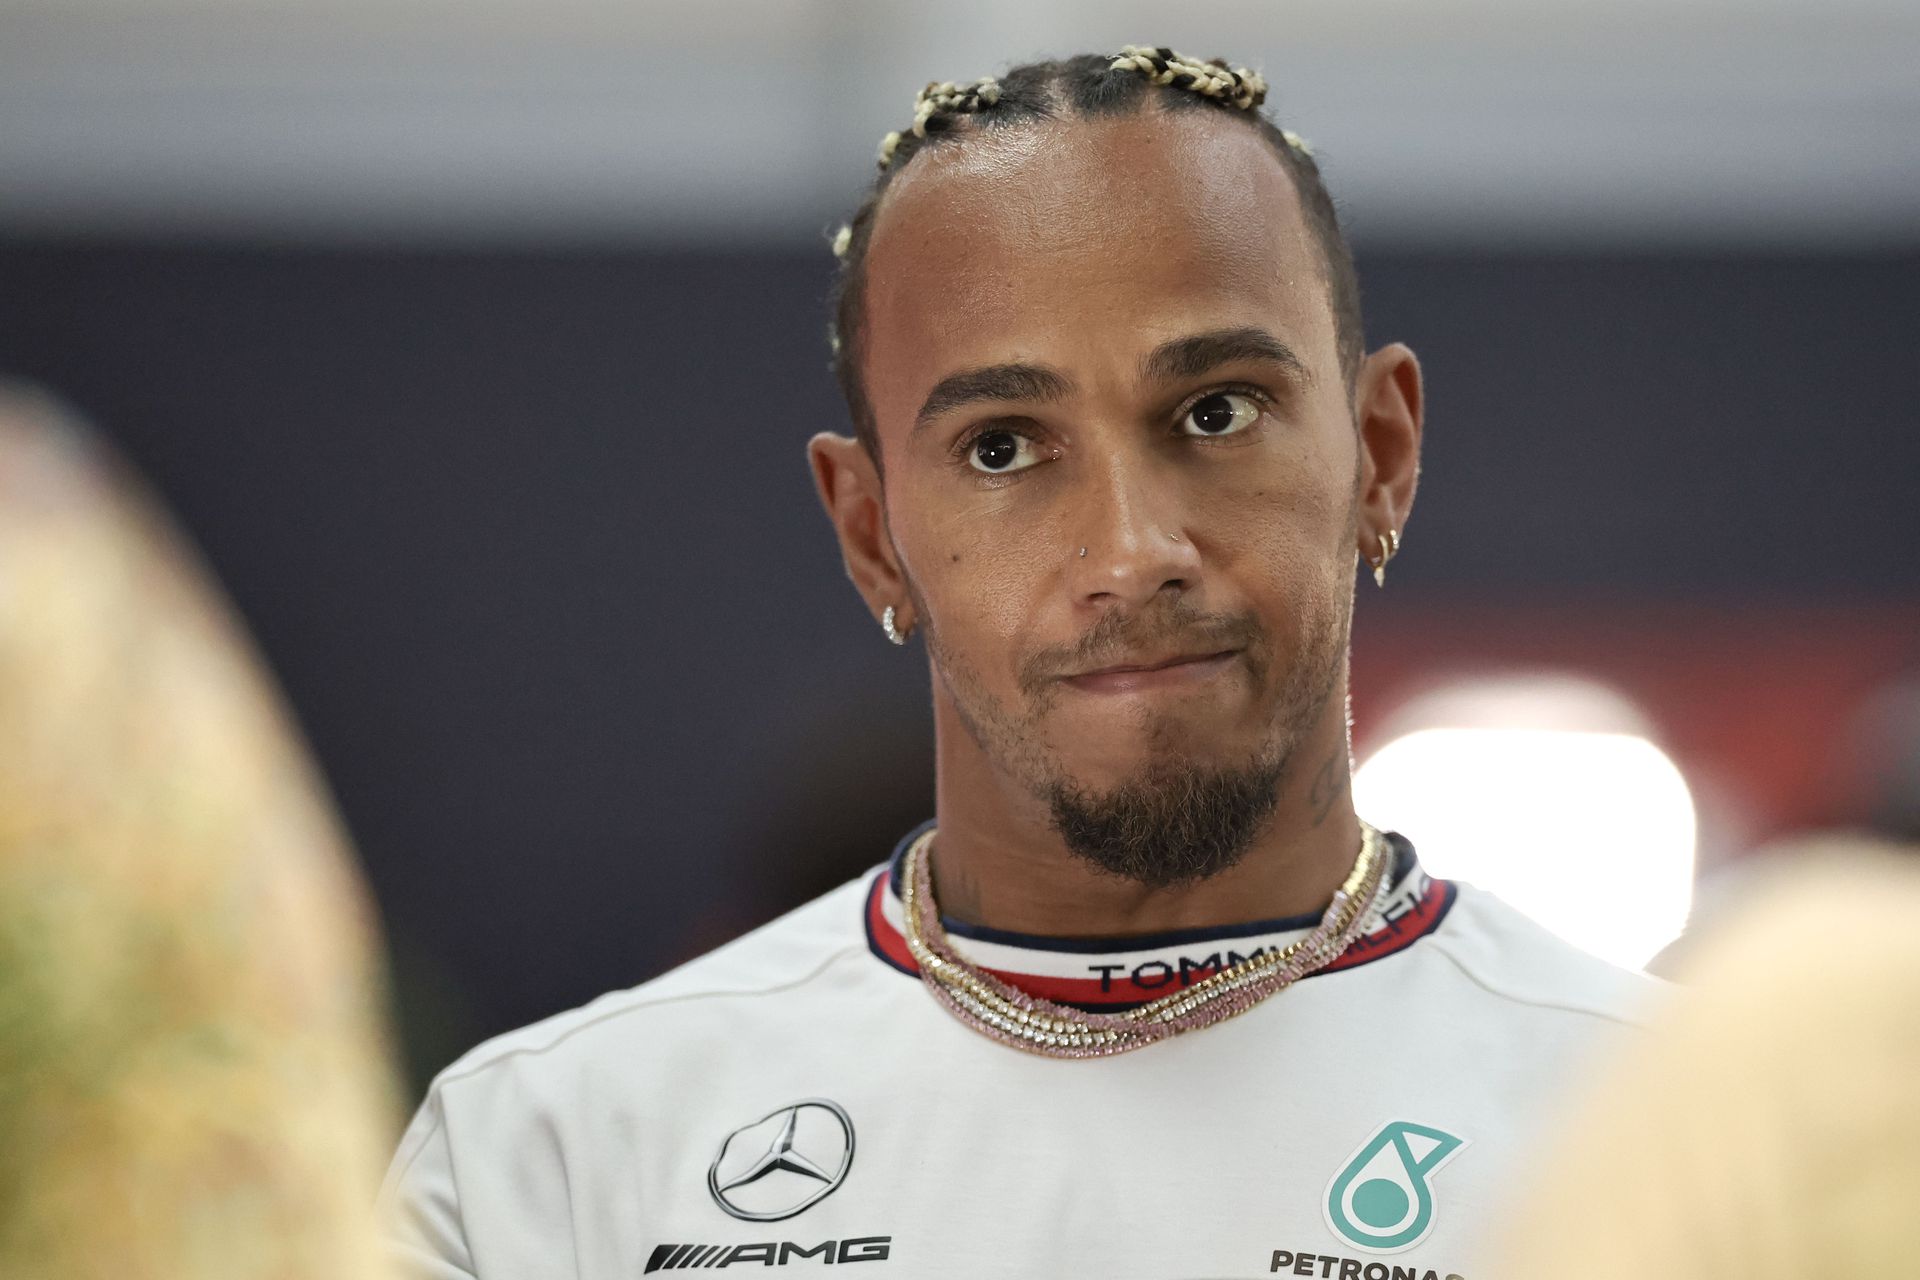 Hamiltont bántja a diszkrimináció, szerinte ennek nincs helye az F1-ben / Fotó: Gettyimages